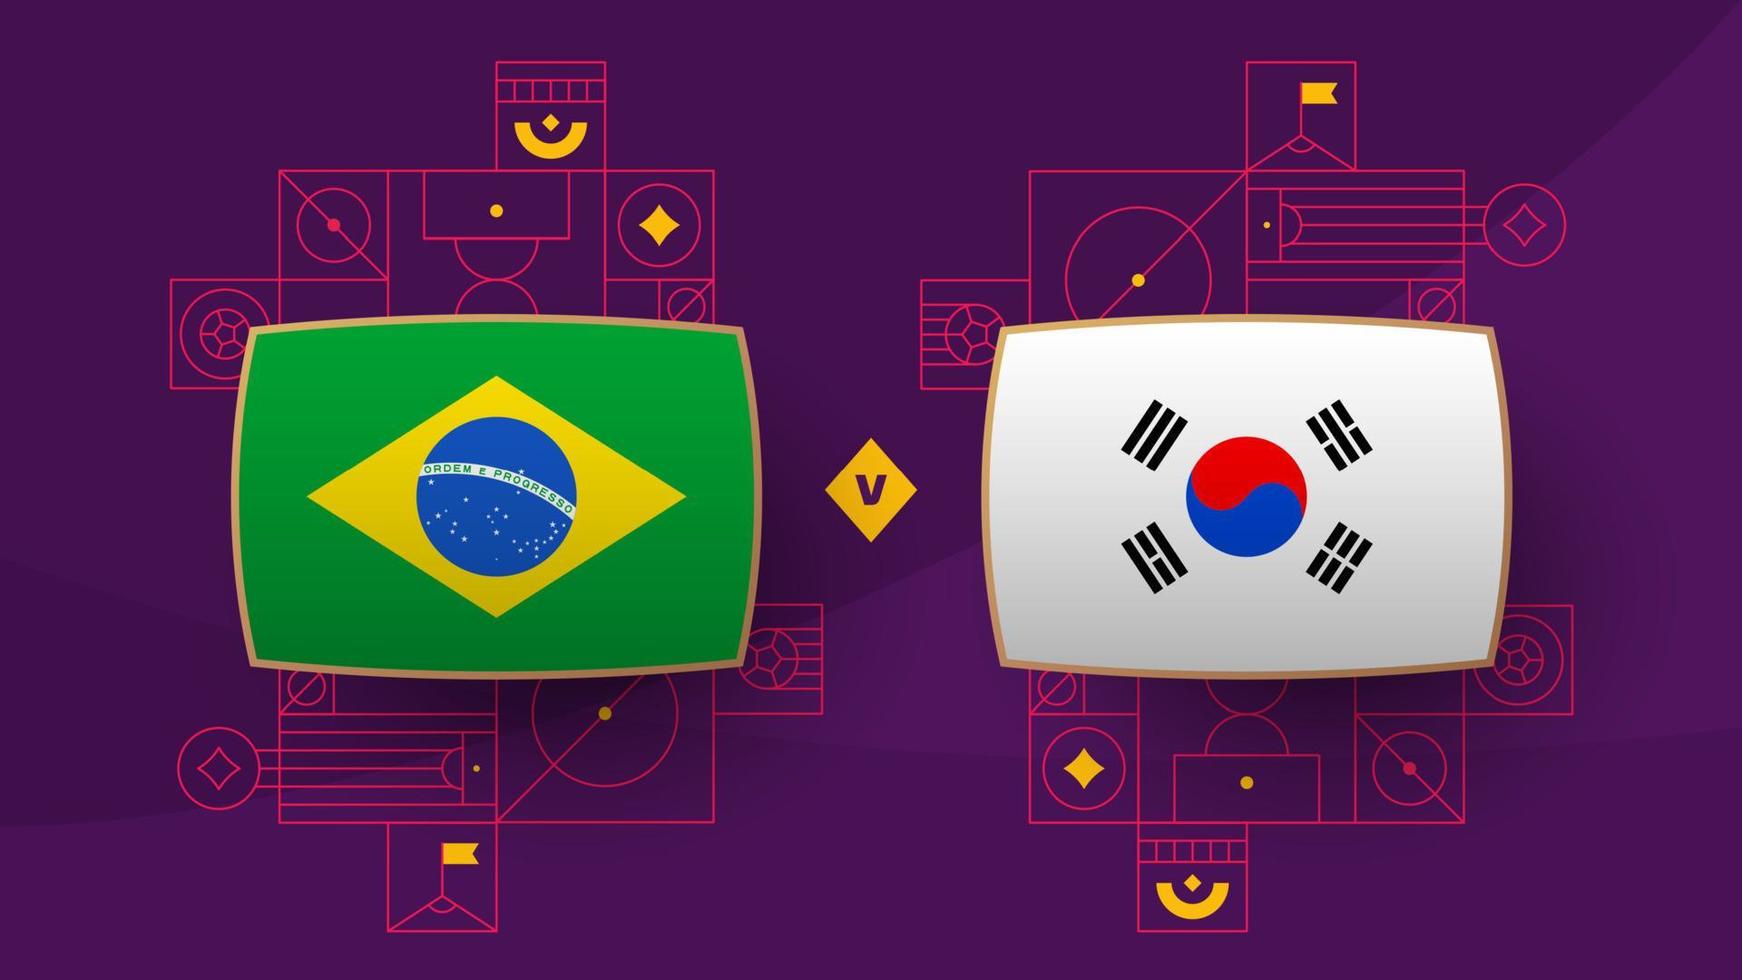 Brasilien korea republik slutspel runda av 16 match fotboll 2022. 2022 värld fotboll mästerskap match mot lag intro sport bakgrund, mästerskap konkurrens affisch, vektor